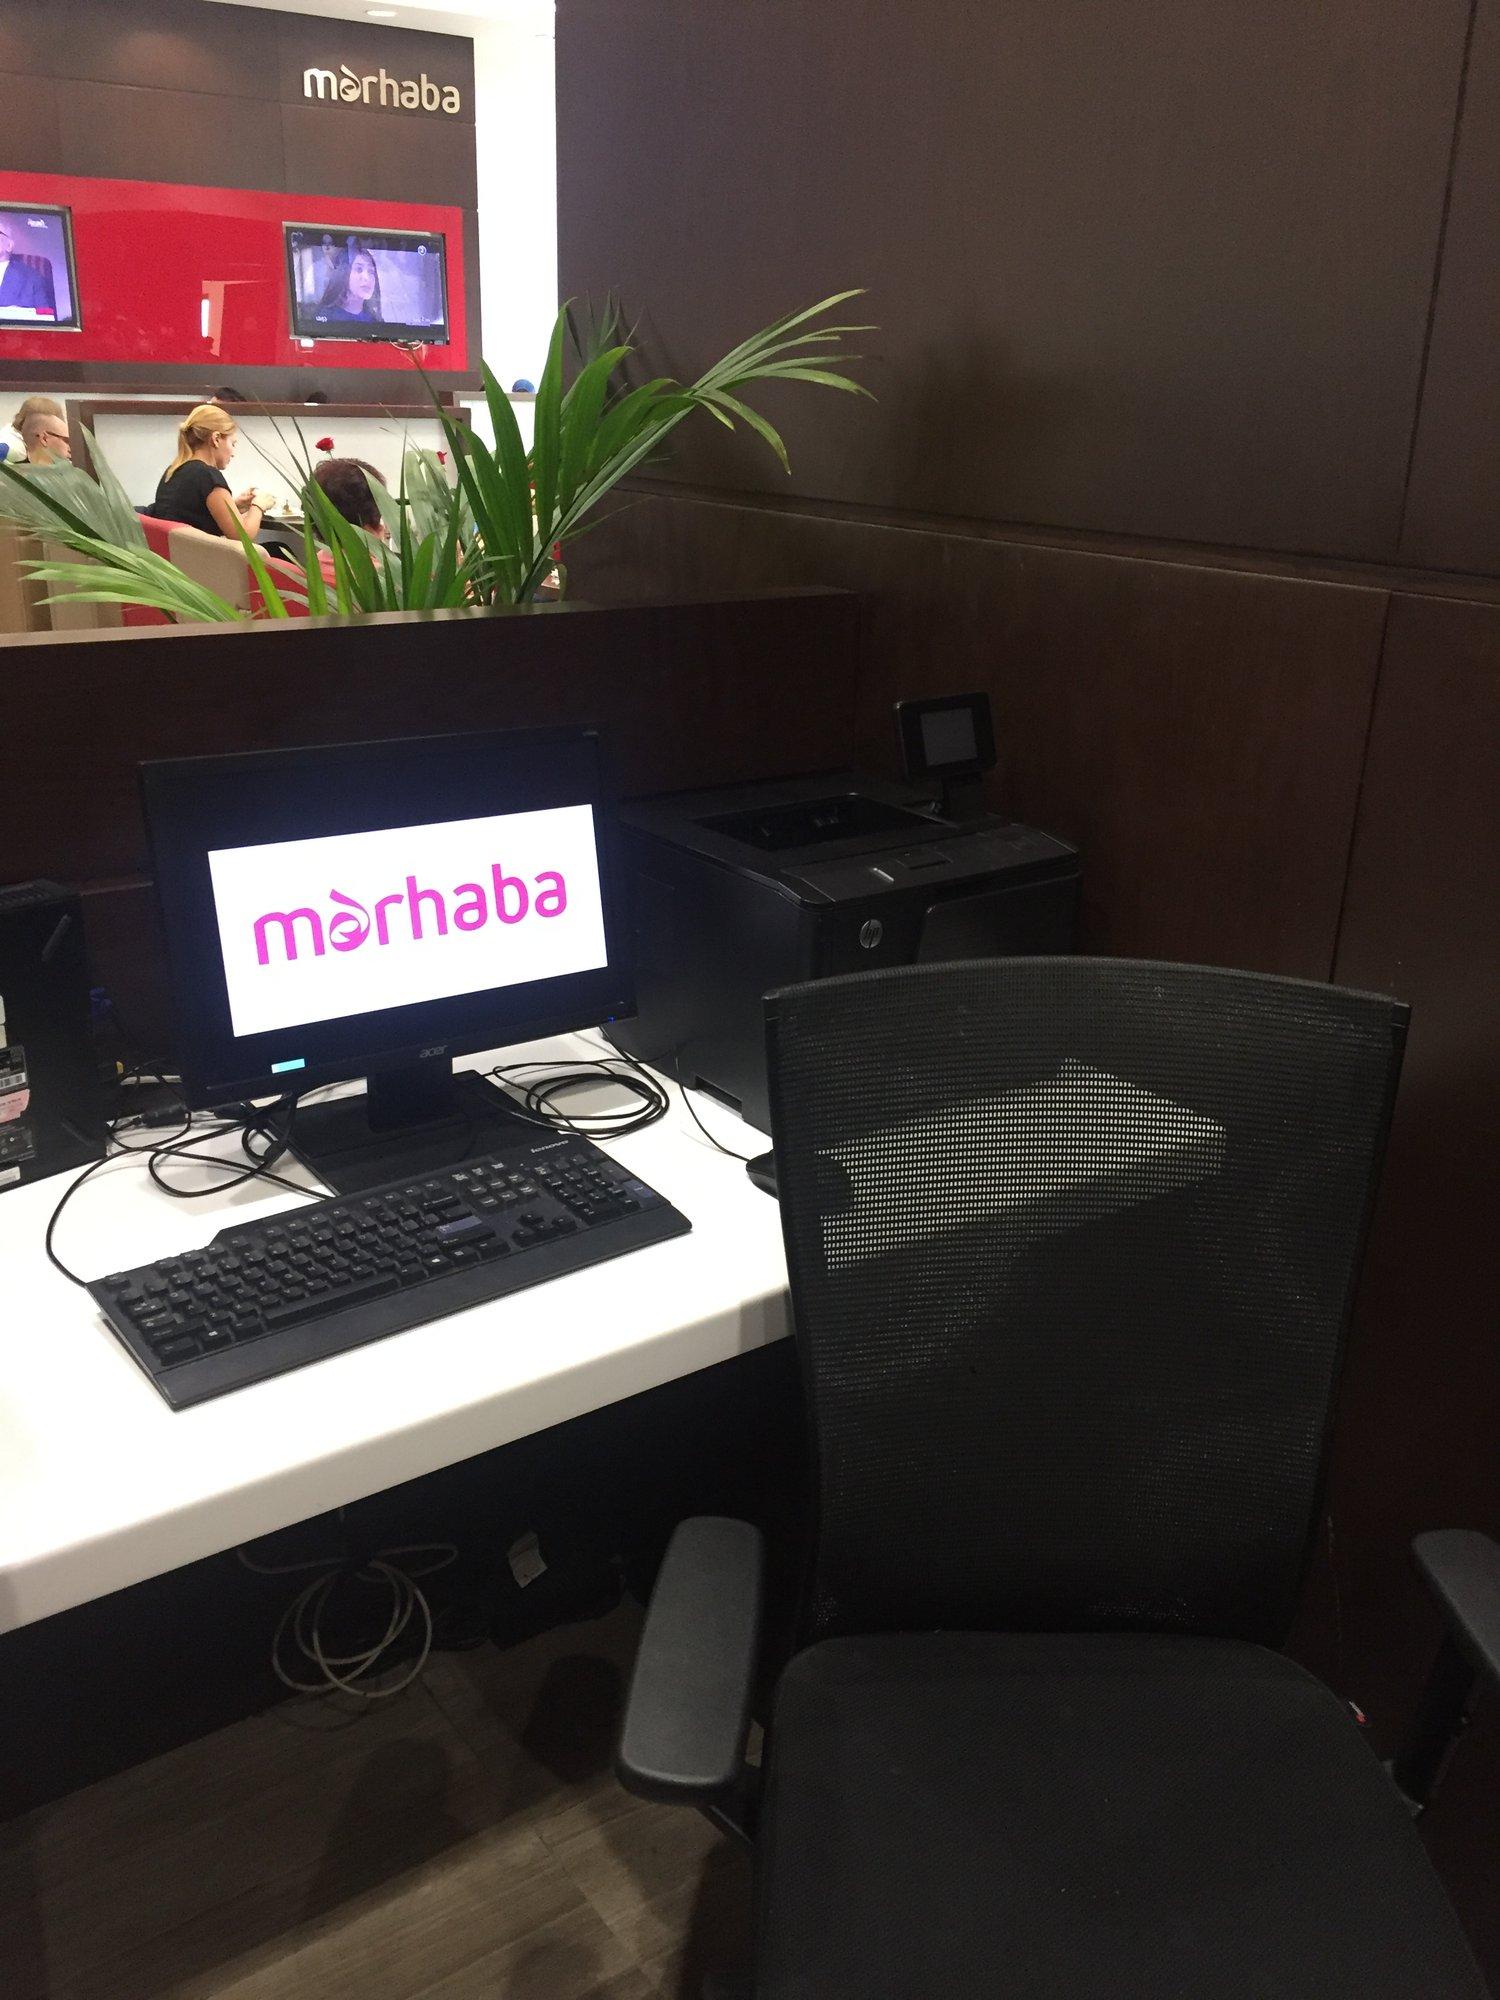 Marhaba Lounge image 24 of 26